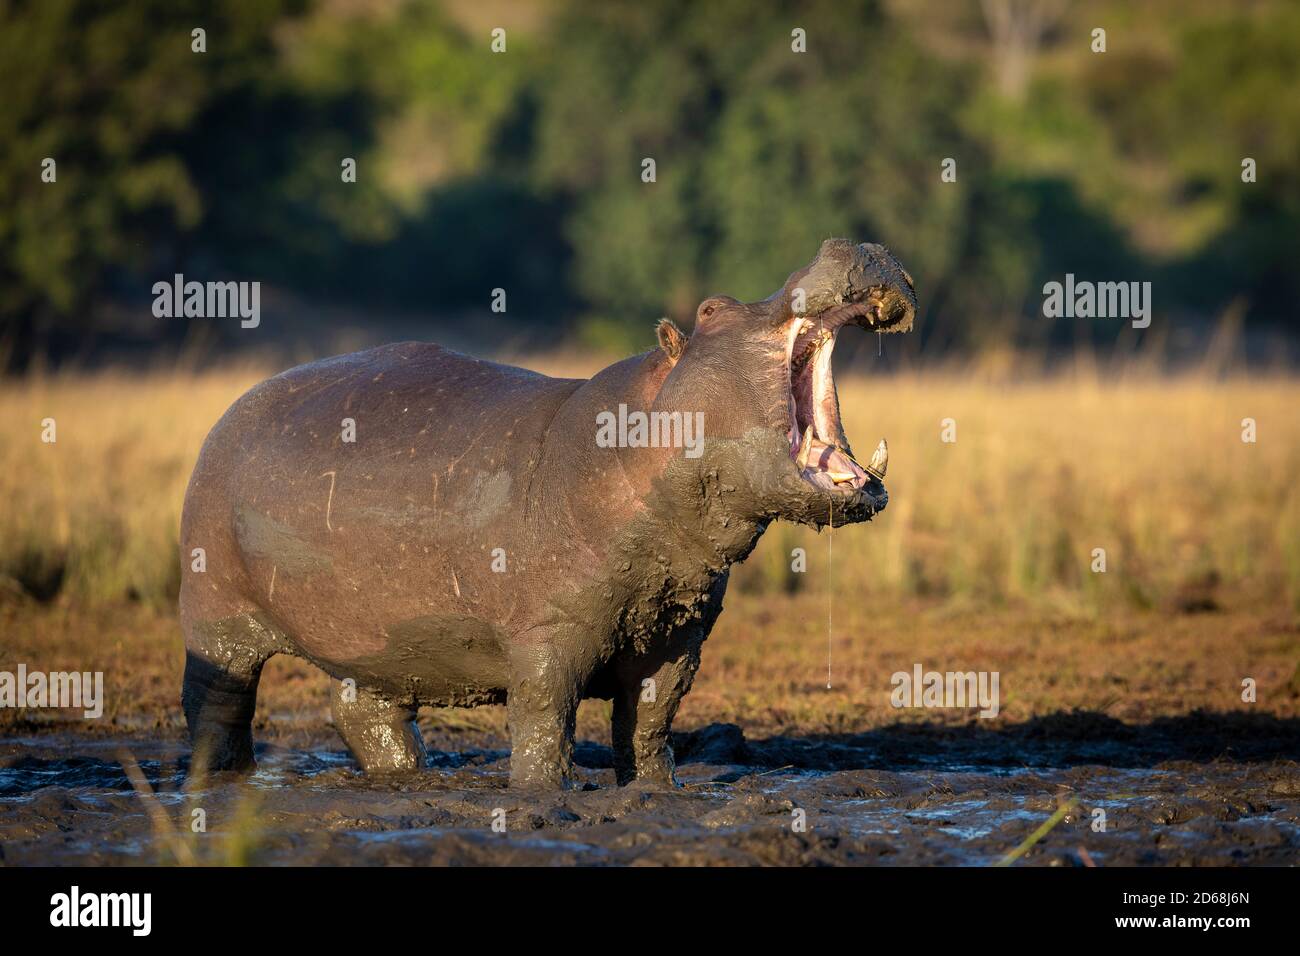 L'hippopotame adulte, grand et boueux, se tient dans la boue eau avec sa bouche ouverte tôt le matin lumière du soleil dedans Rivière Chobe au Botswana Banque D'Images